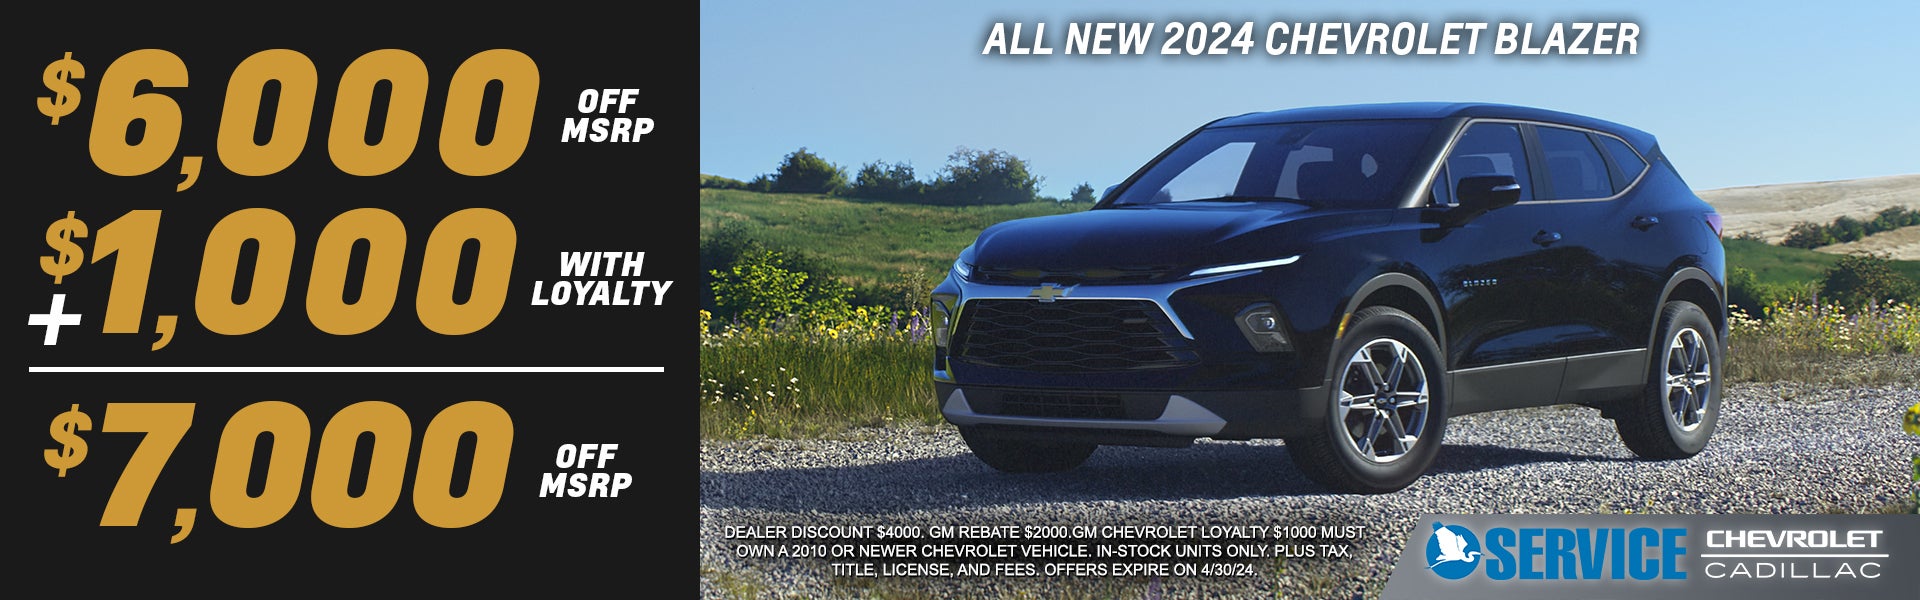 New 2024 Chevrolet Blazer